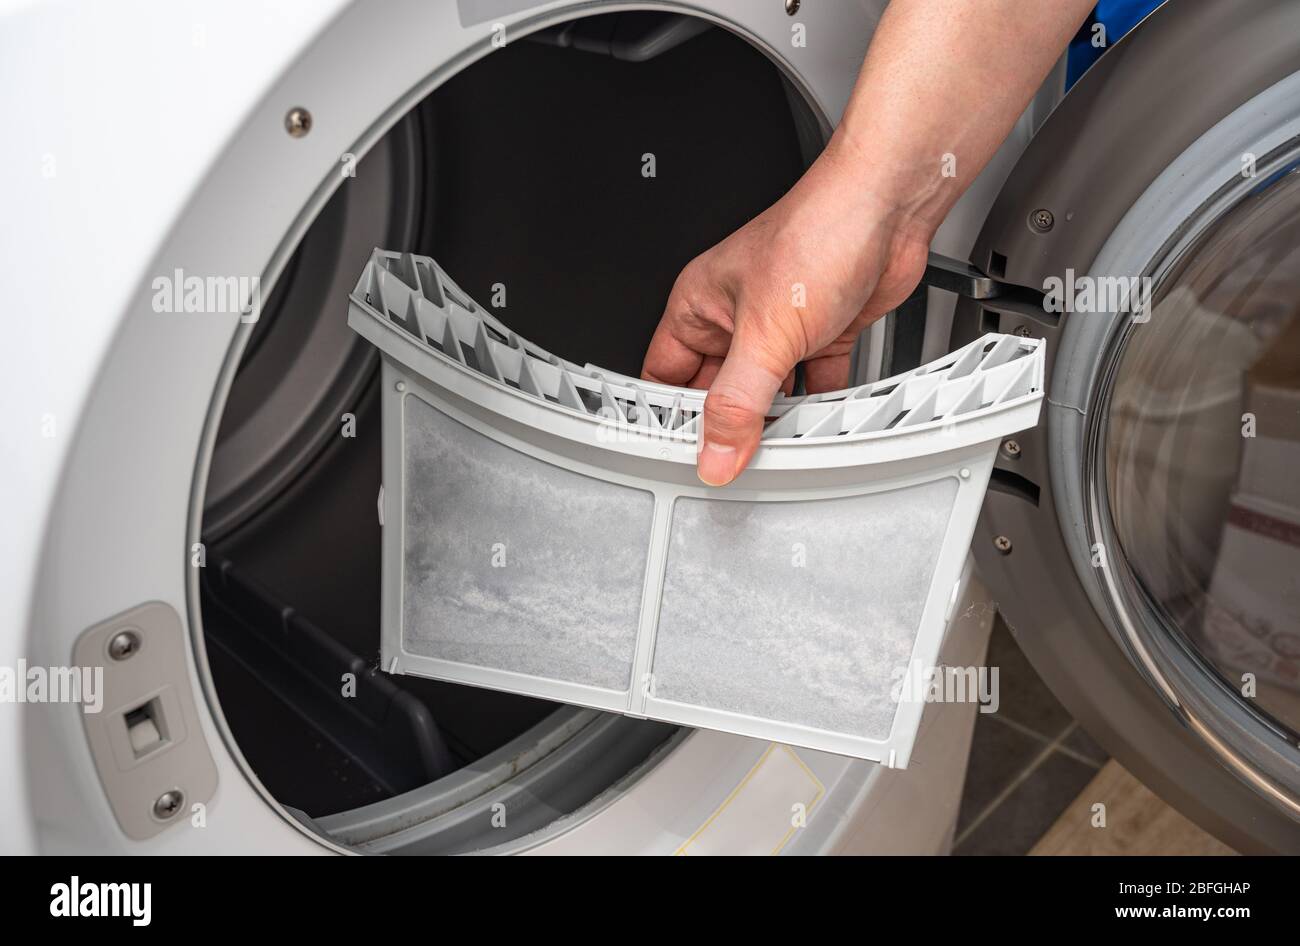 Filtro per asciugatrice immagini e fotografie stock ad alta risoluzione -  Alamy